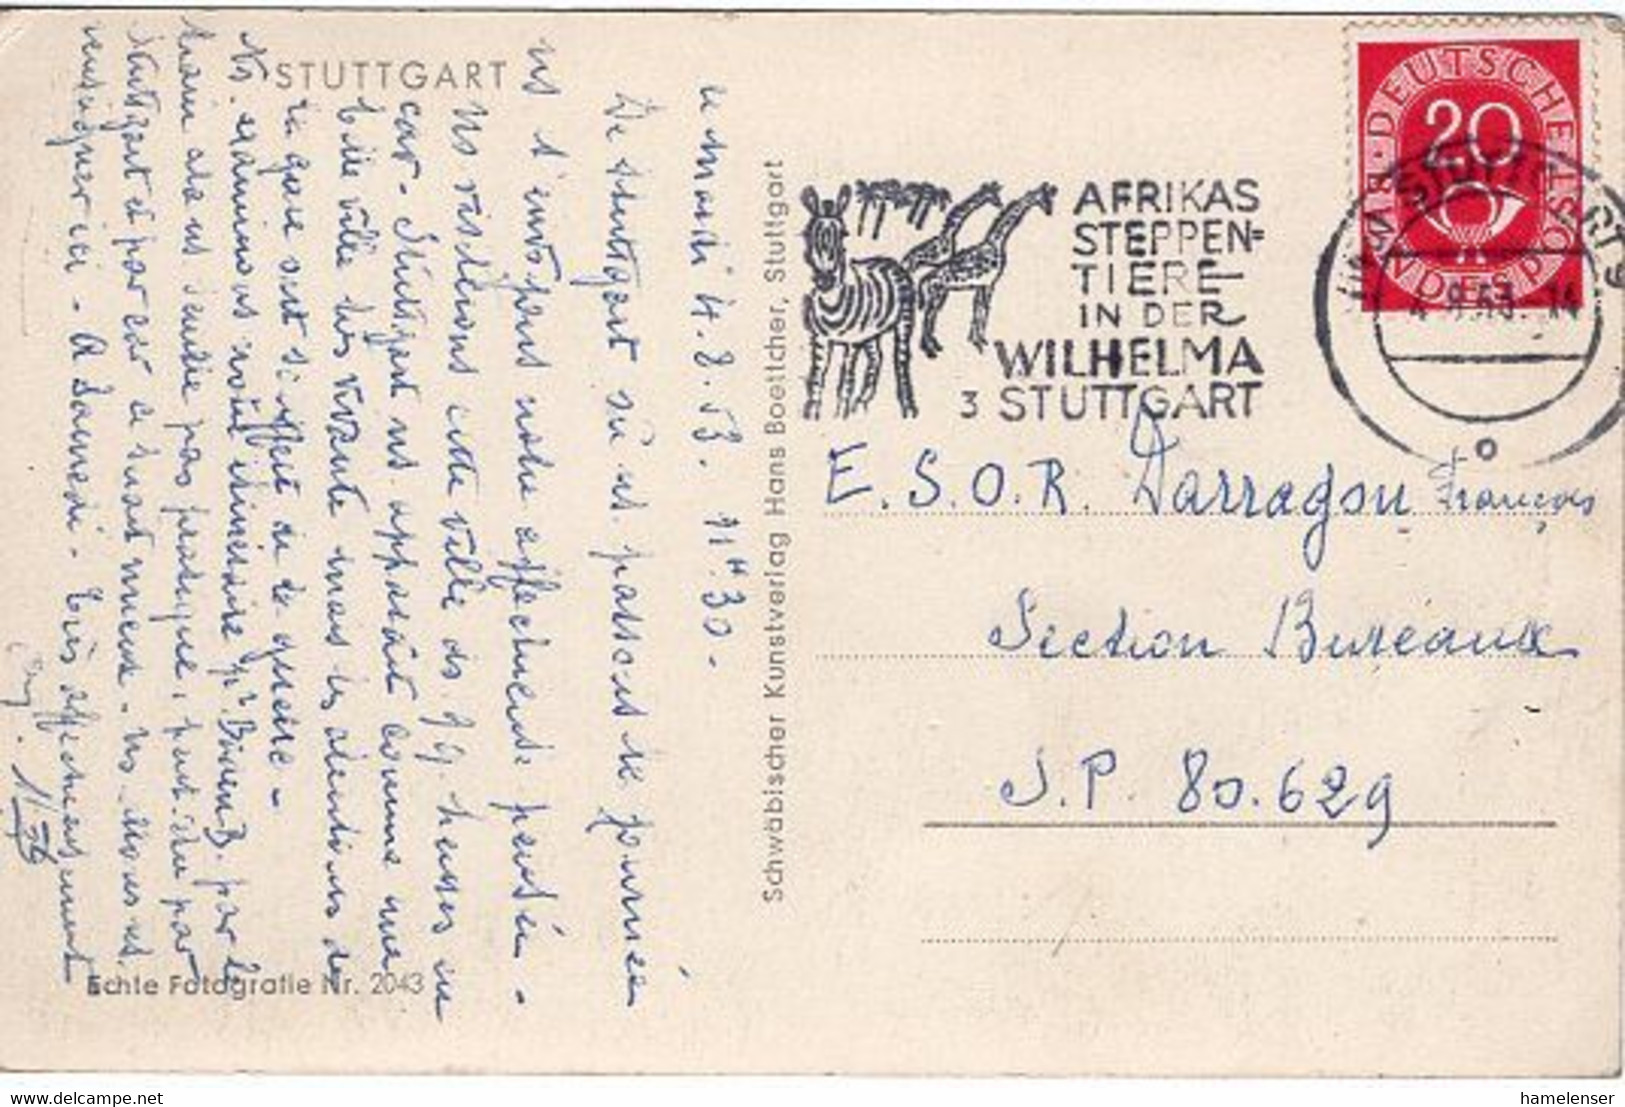 51708 - Bund - 1953 - 20Pfg Posthorn EF A AnsKte STUTTGART - AFRIKAS STEPPENTIERE -> S.P. 80.629 (Frankreich) - Giraffen